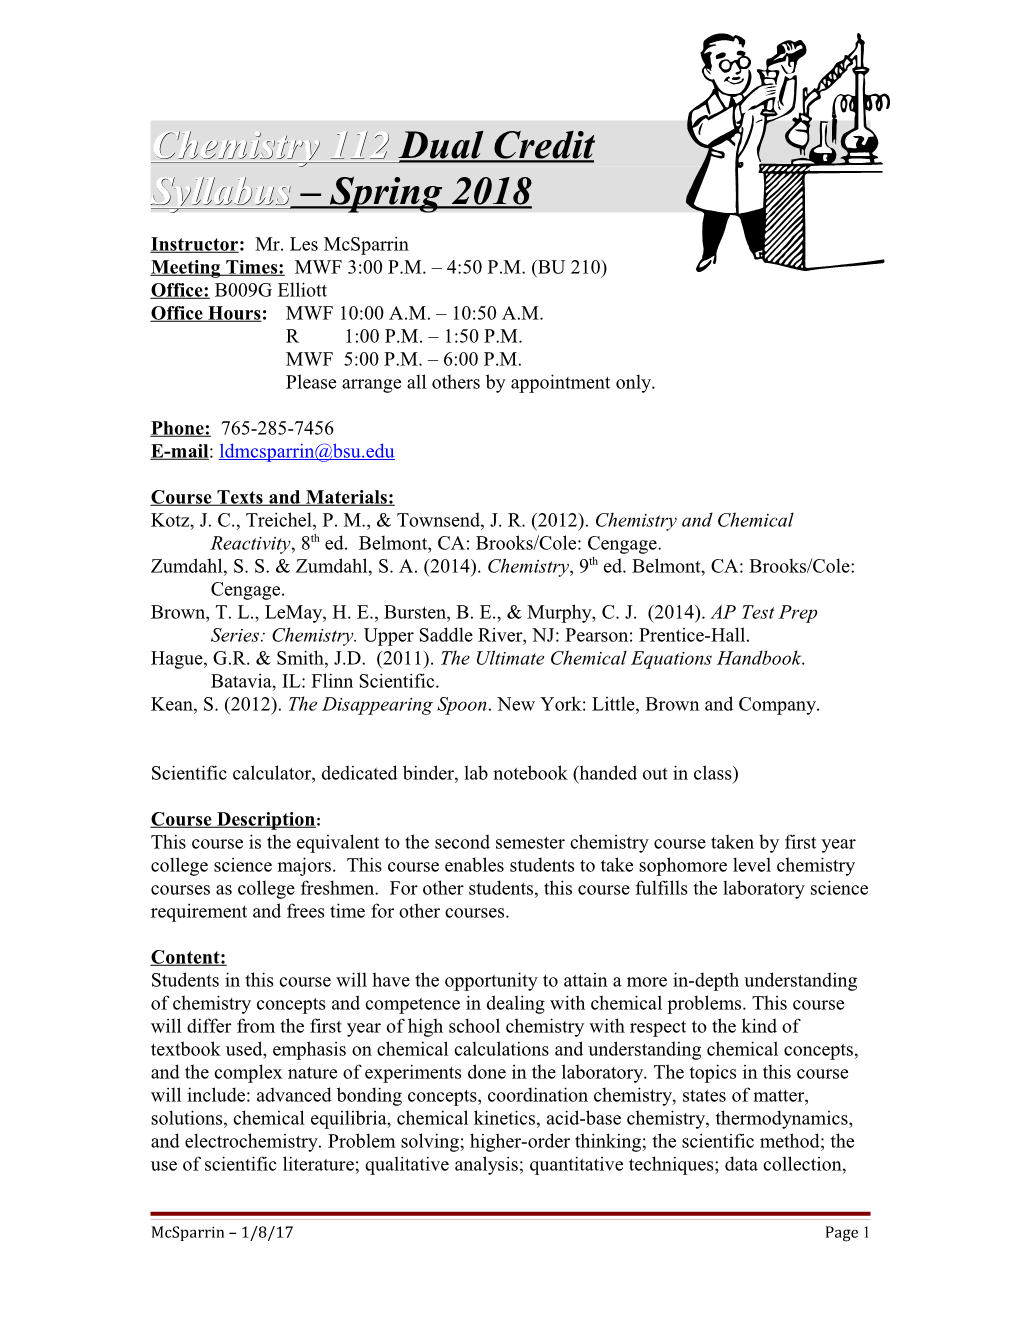 Syllabus Spring 2018